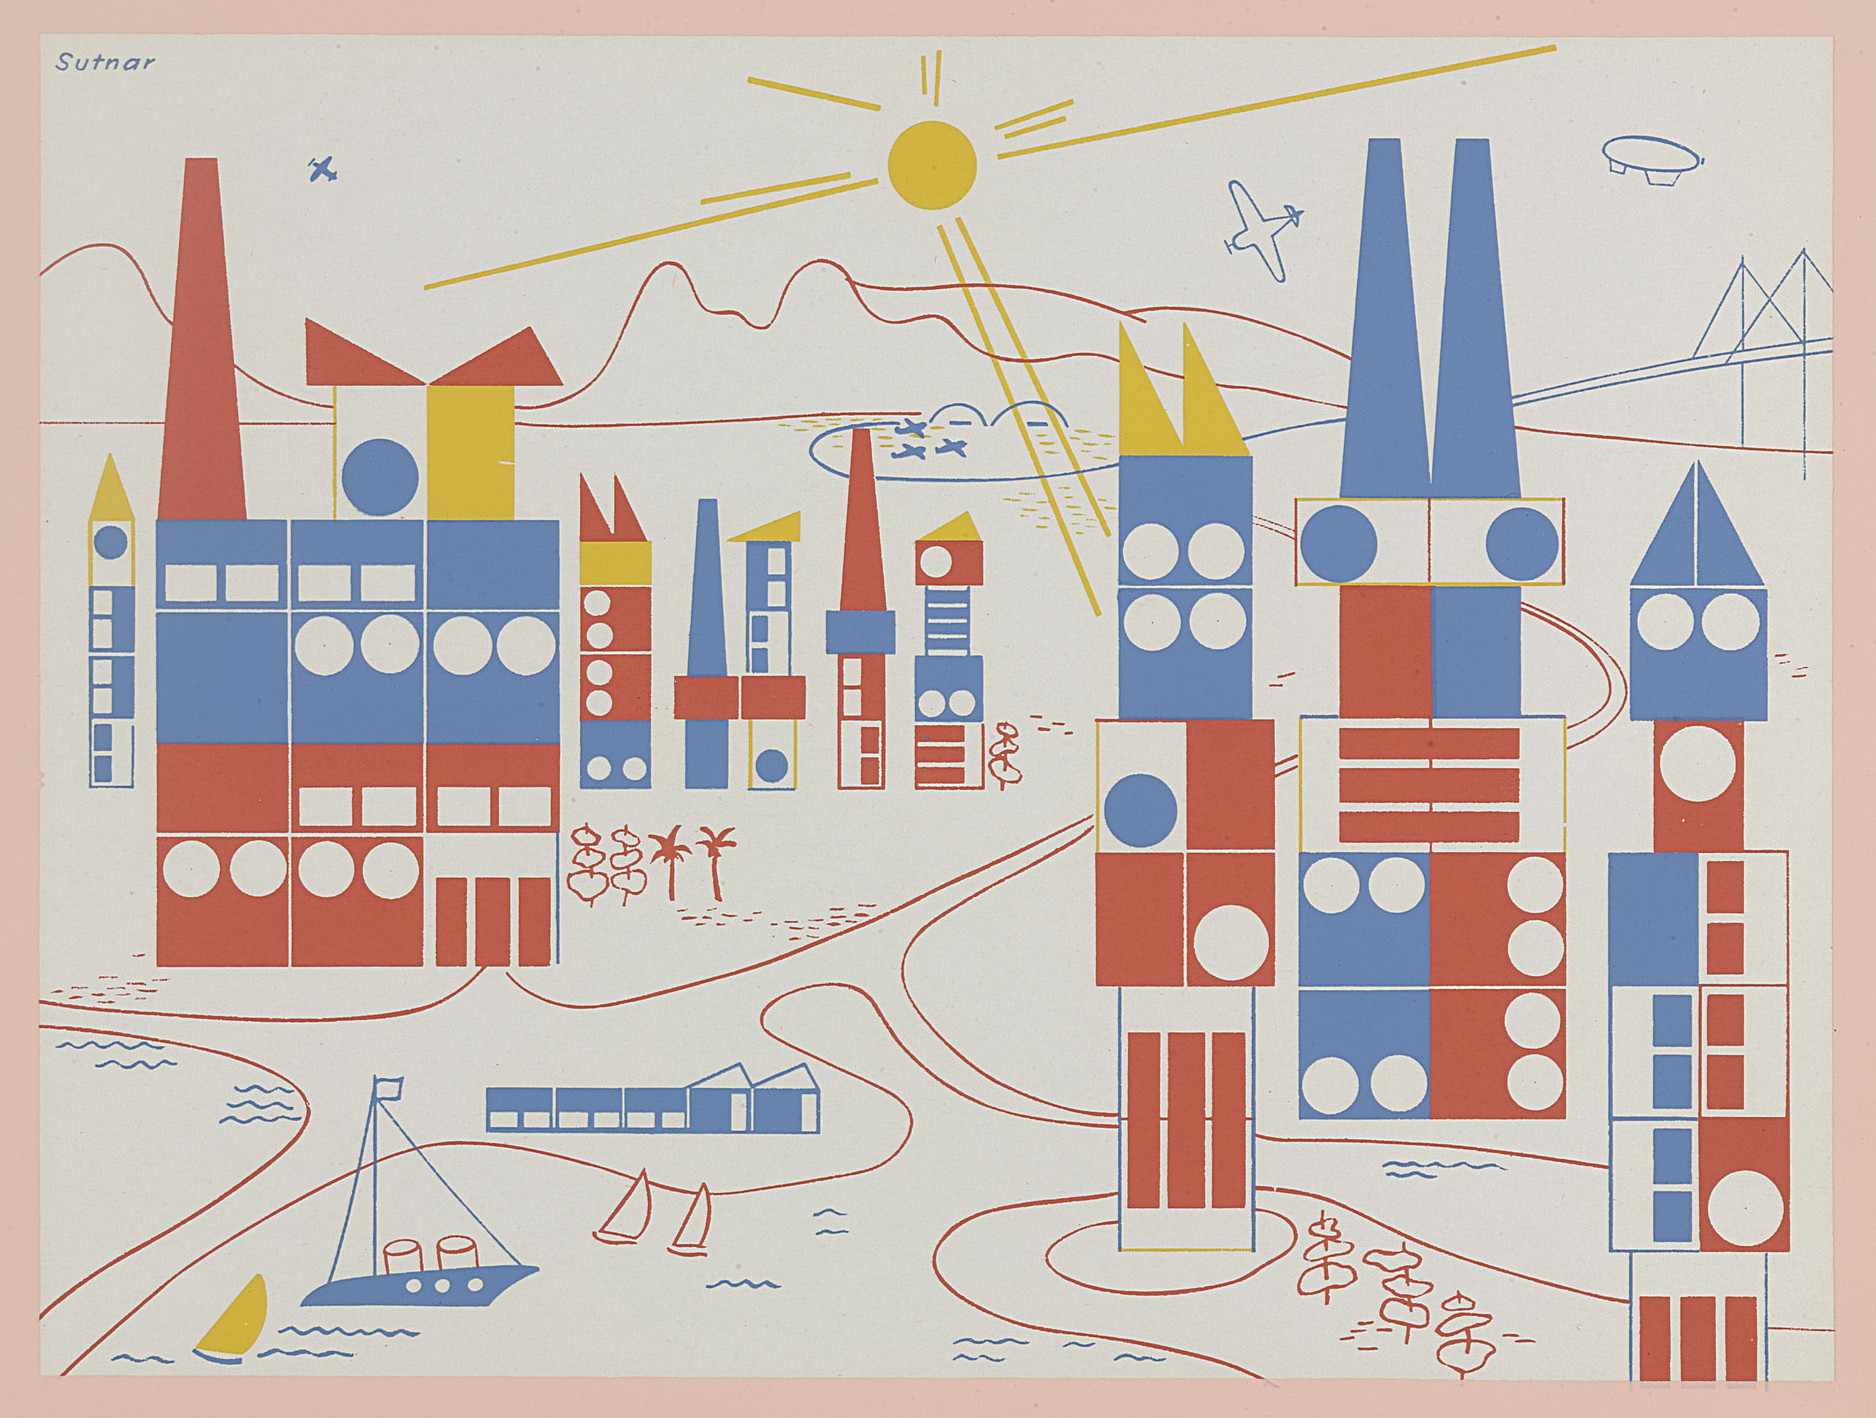 Ладислав Сутнар (1897—1976). Промо-набор для конструктора «Построй город». Около 1943 г. Источник: MoMA